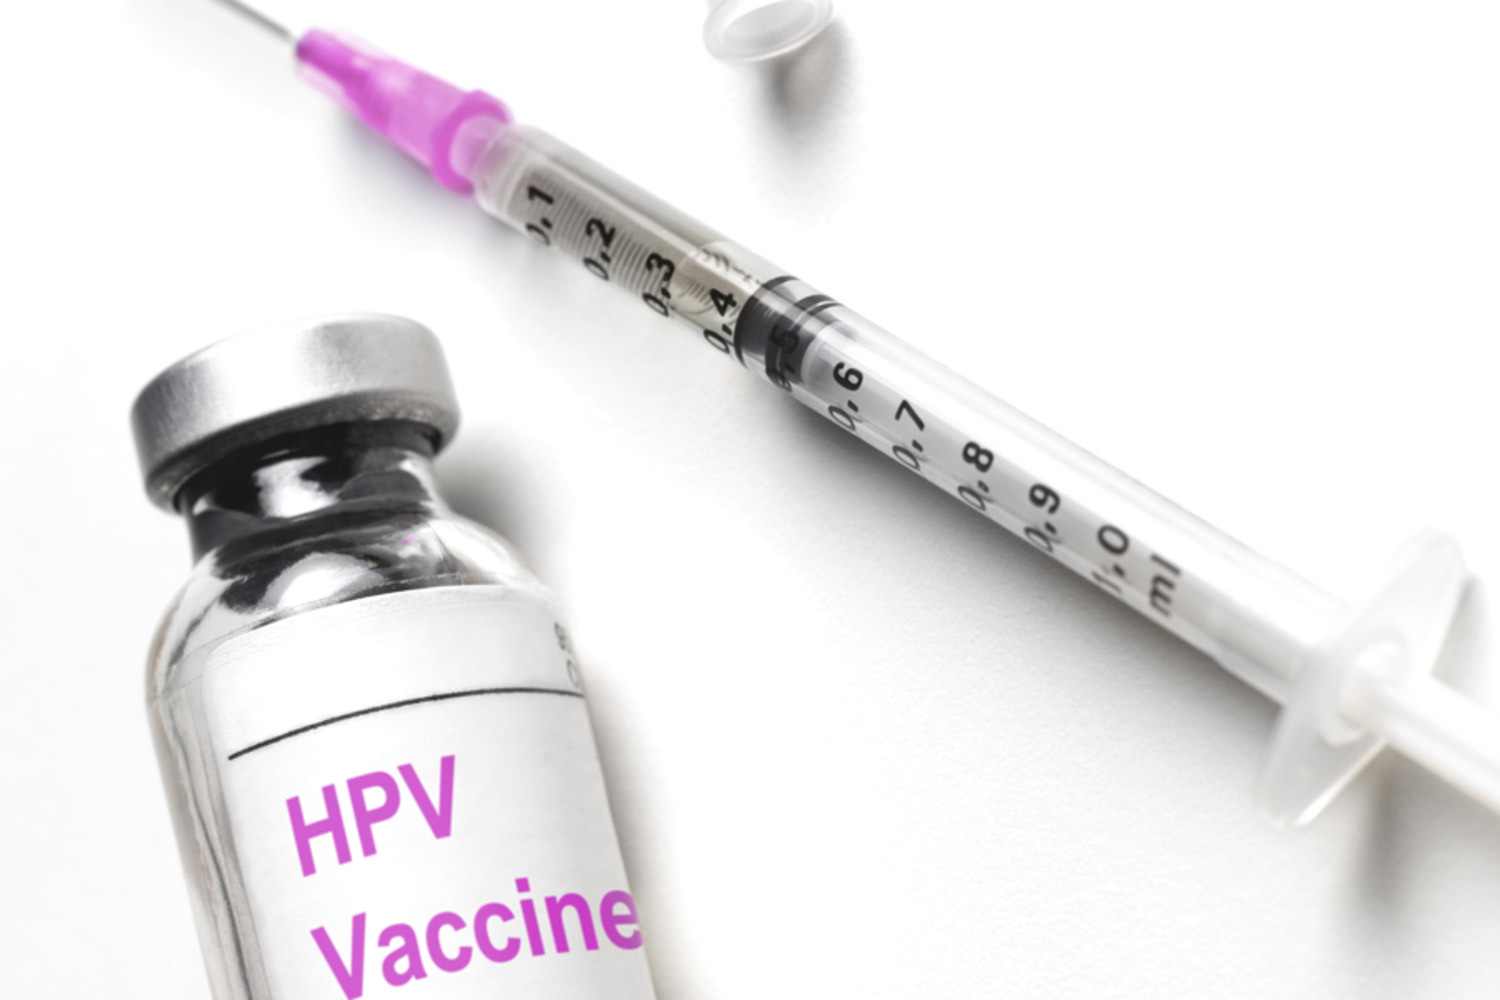   Các bé gái nên được tiêm phòng vắc xin HPV phòng ngừa ung thư cổ tử cung  